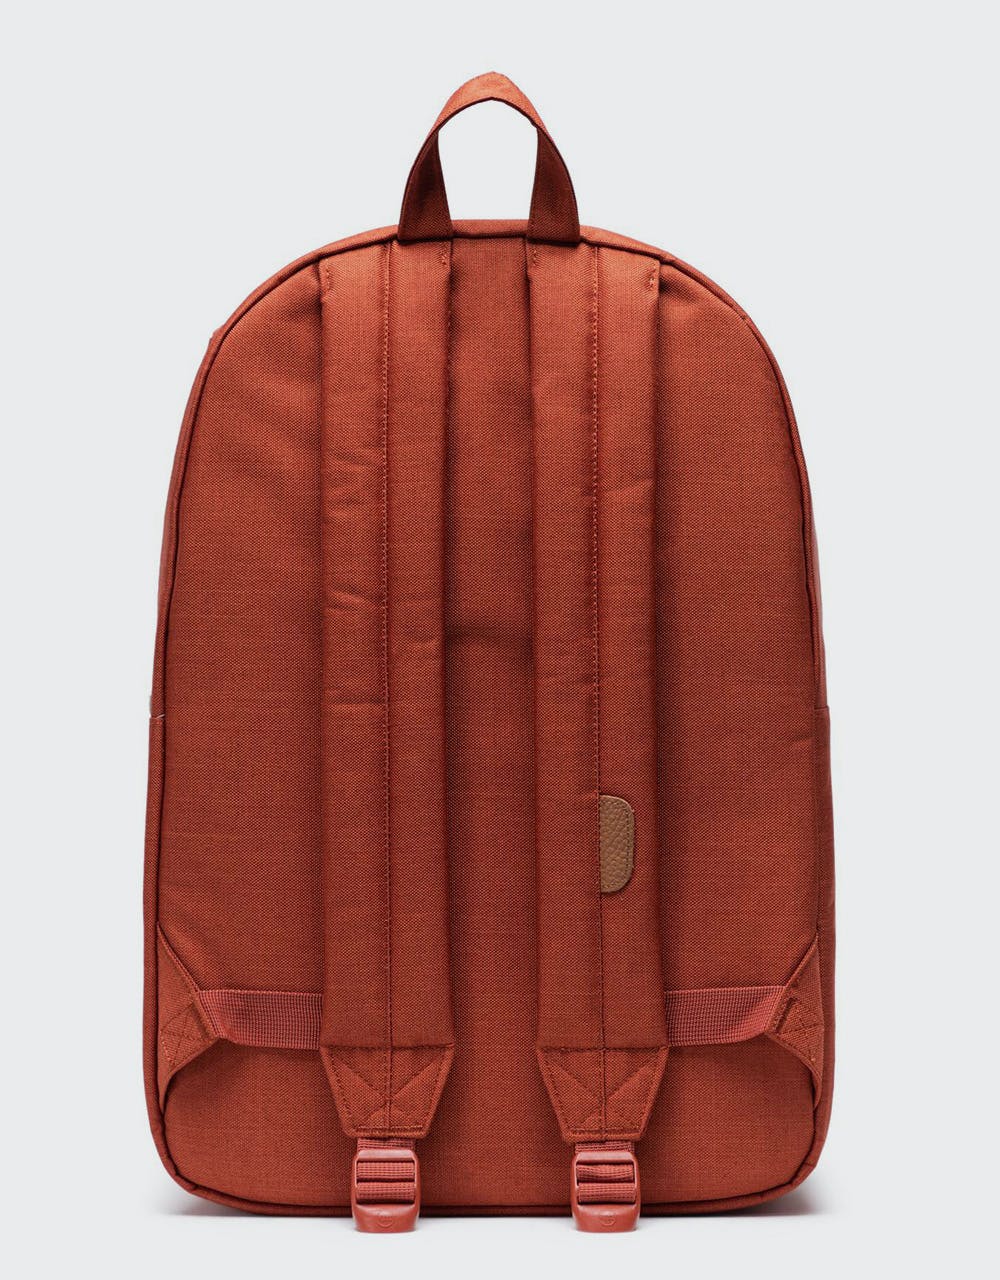 Herschel Supply Co. Heritage Backpack - Picante Crosshatch